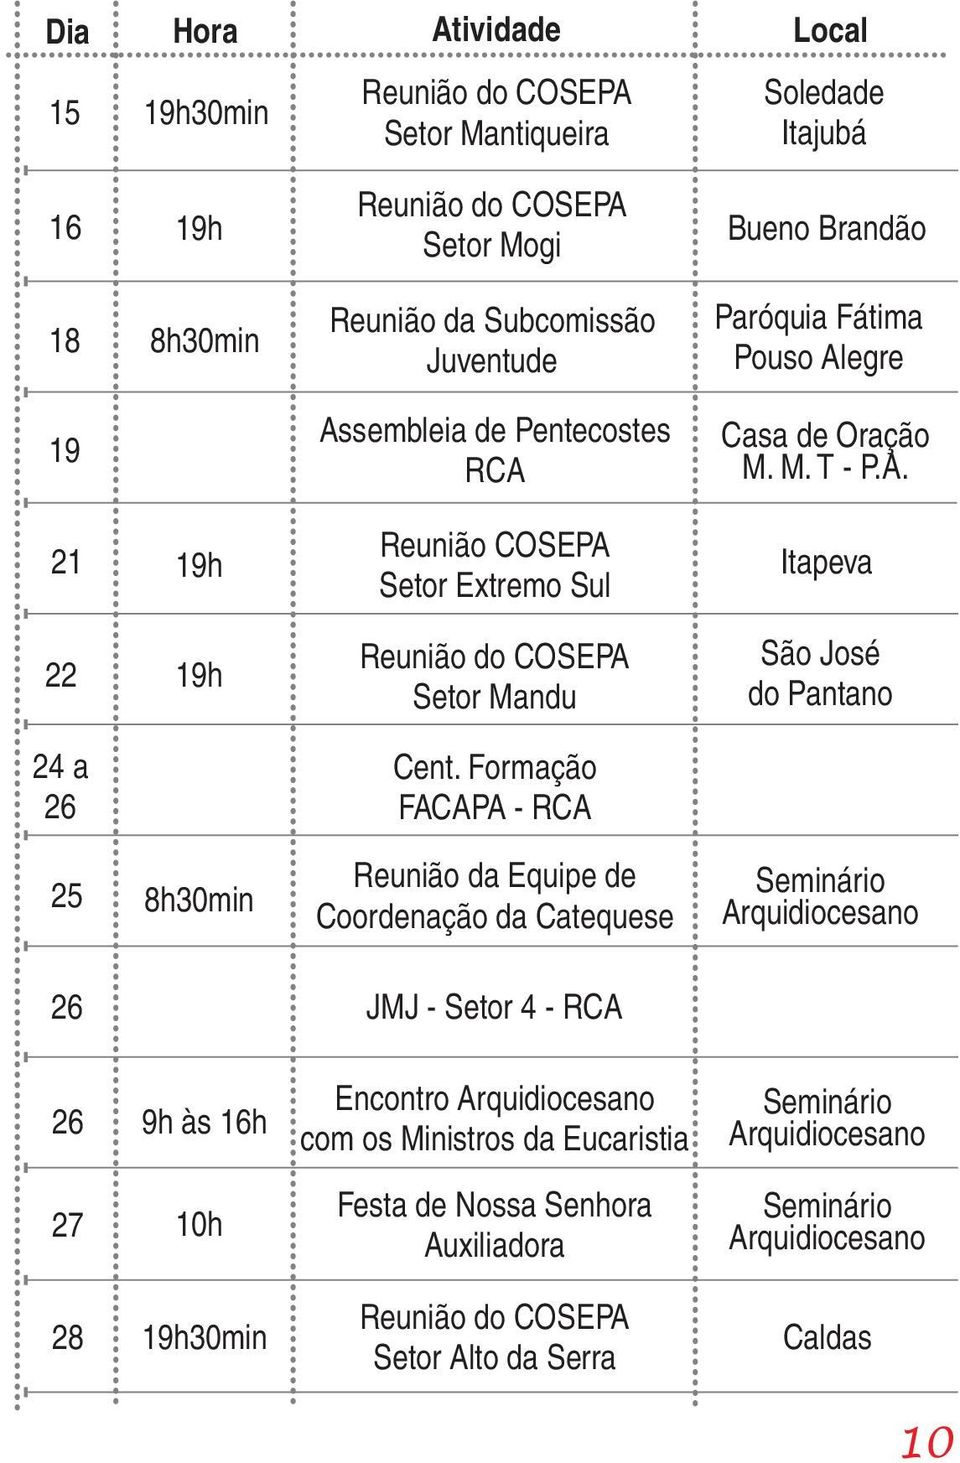 Formação FACAPA - São José do Pantano 25 Reunião da Equipe de Coordenação da Catequese 26 JMJ - Setor 4-26 9h às